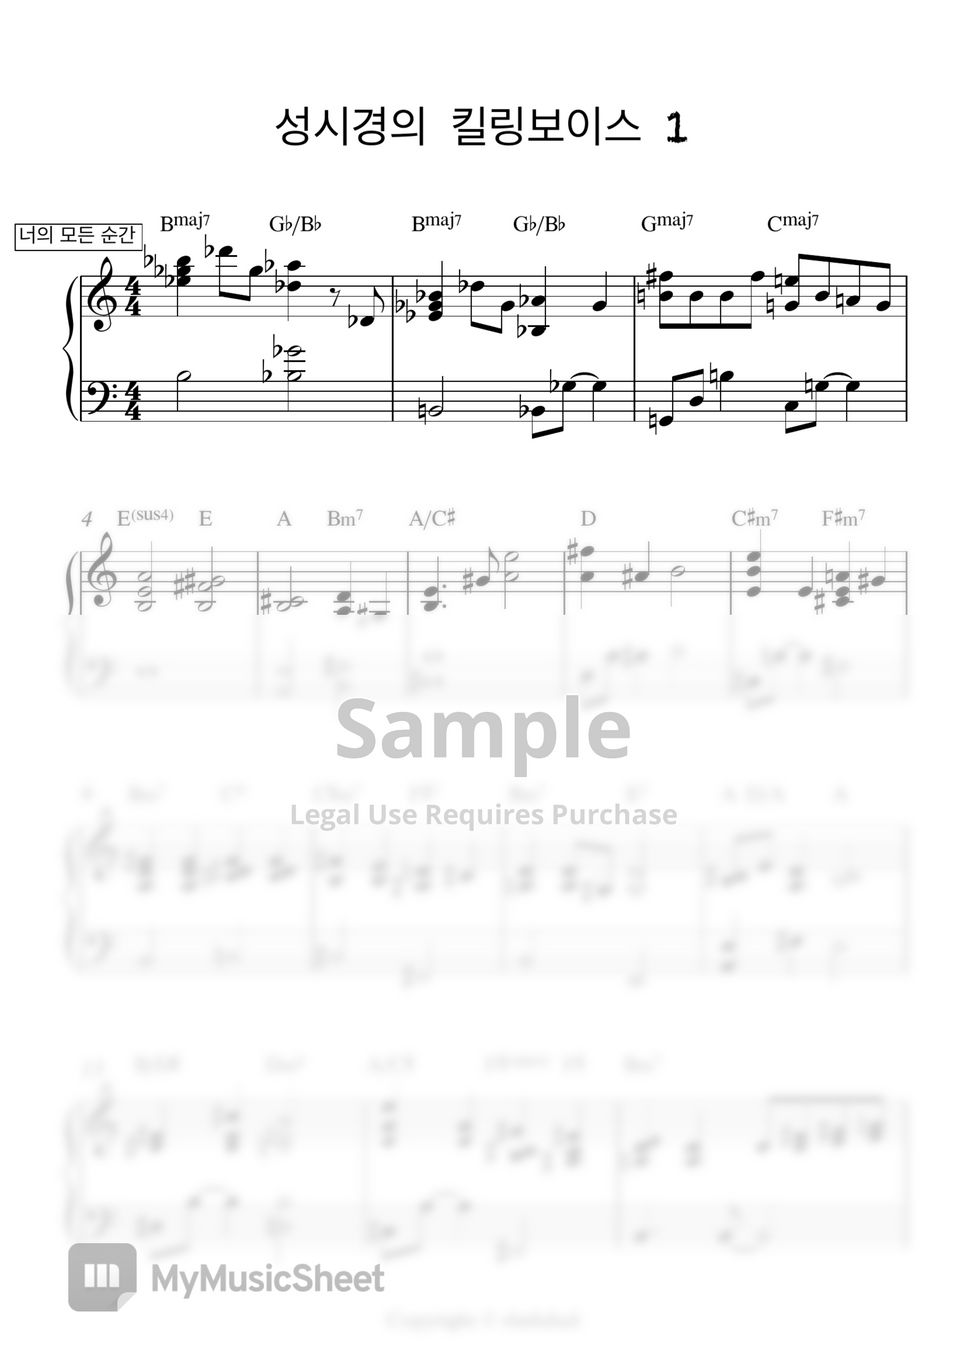 성시경의 킬링보이스 1 - 성시경의 킬링보이스 1 (피아노 양손악보) by rlathdud